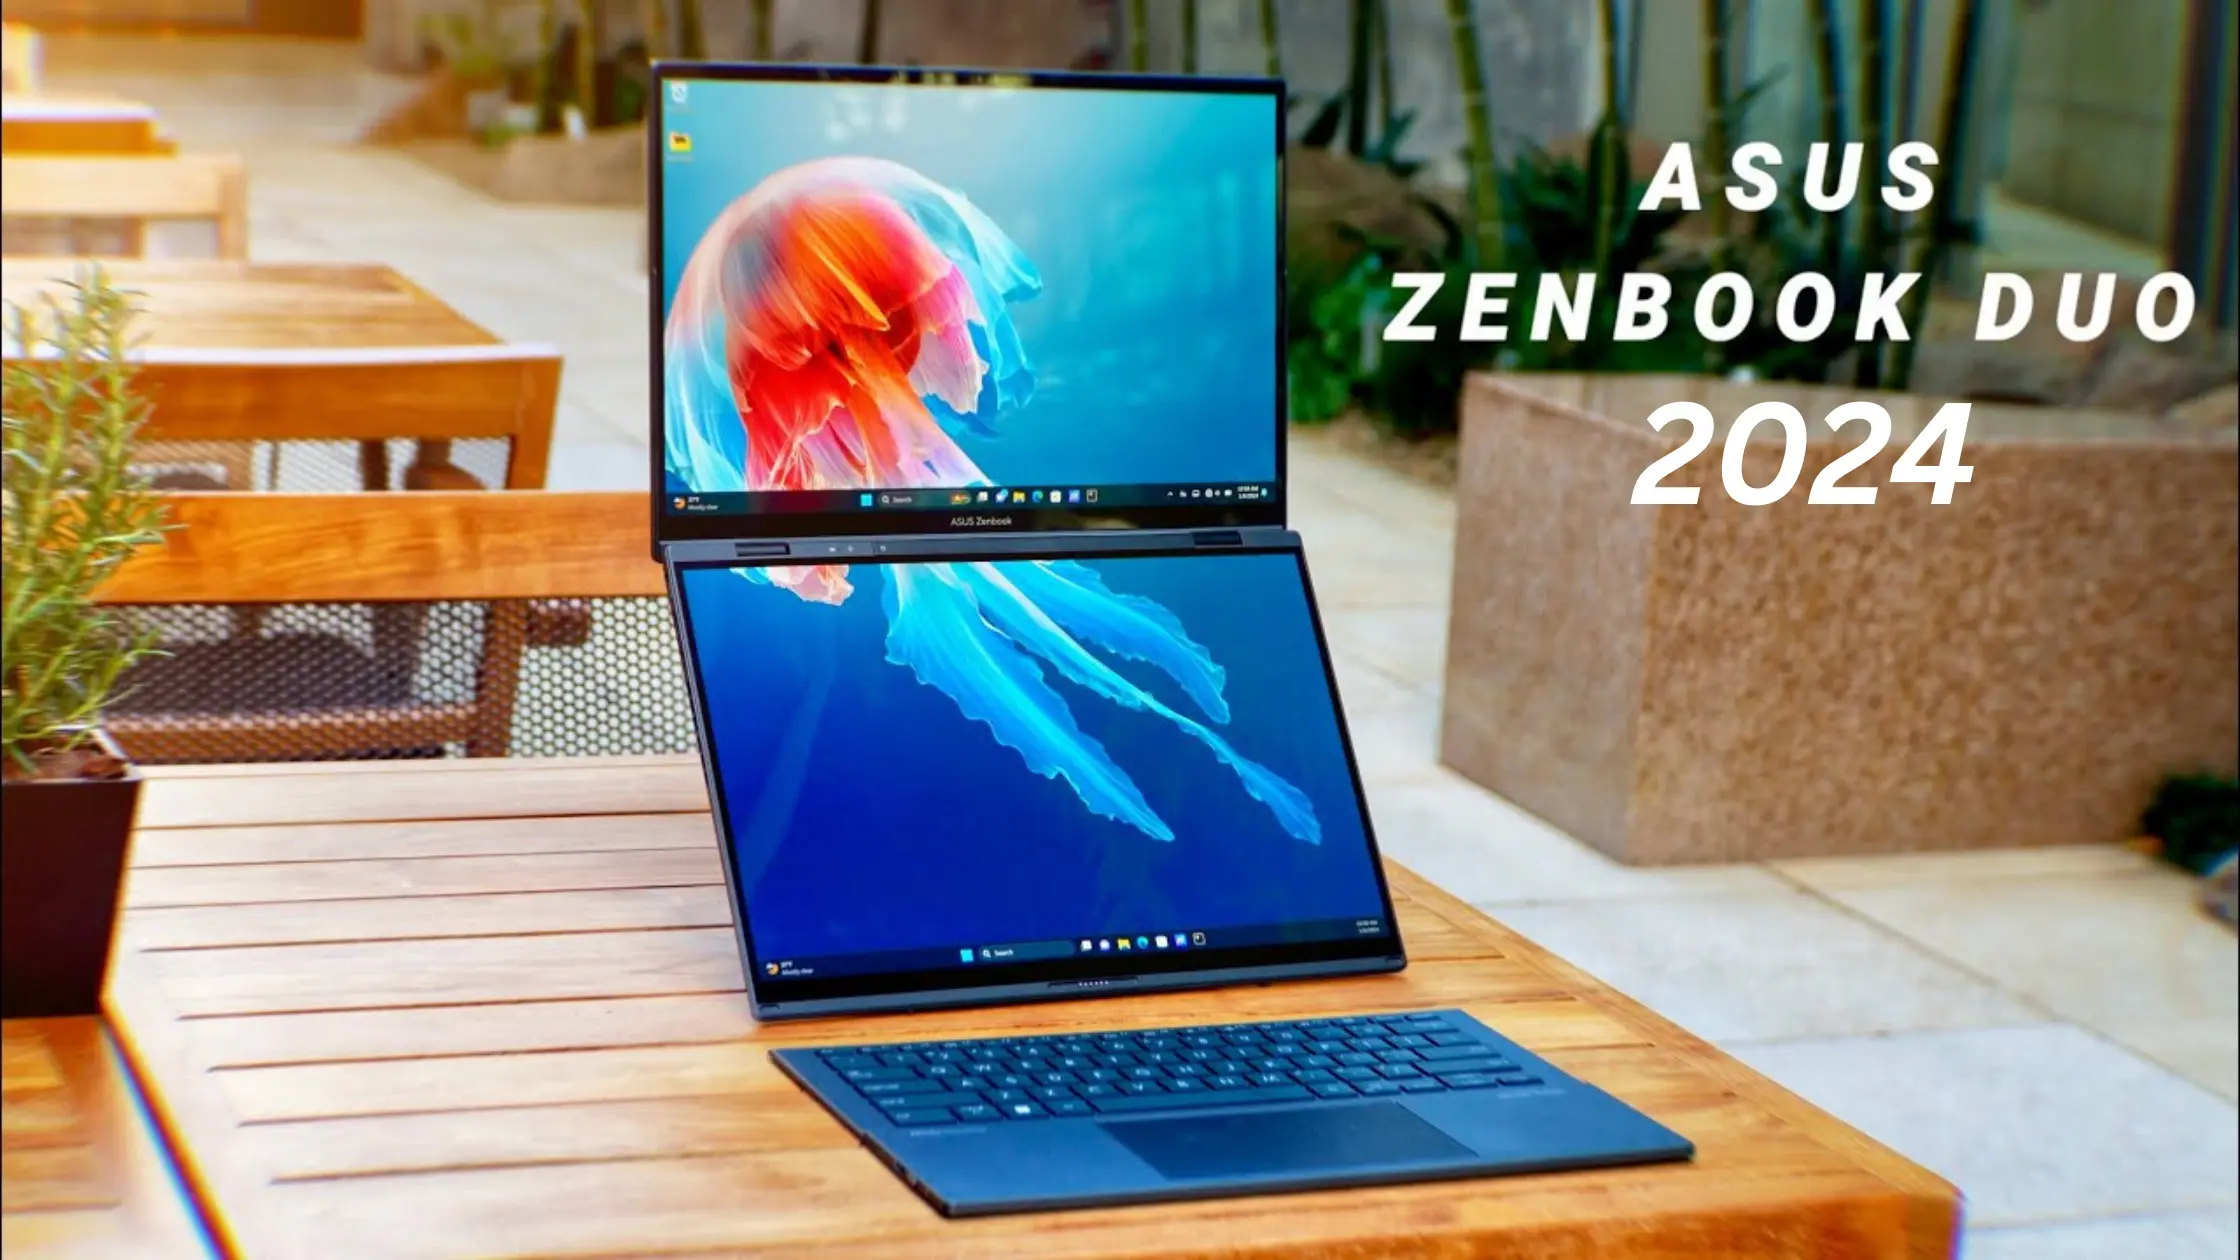 Asus Zenbook Duo 2024: भारत में लॉन्च हुआ डबल स्क्रीन वाला लैपटॉप, जानें Specifications और कीमत!